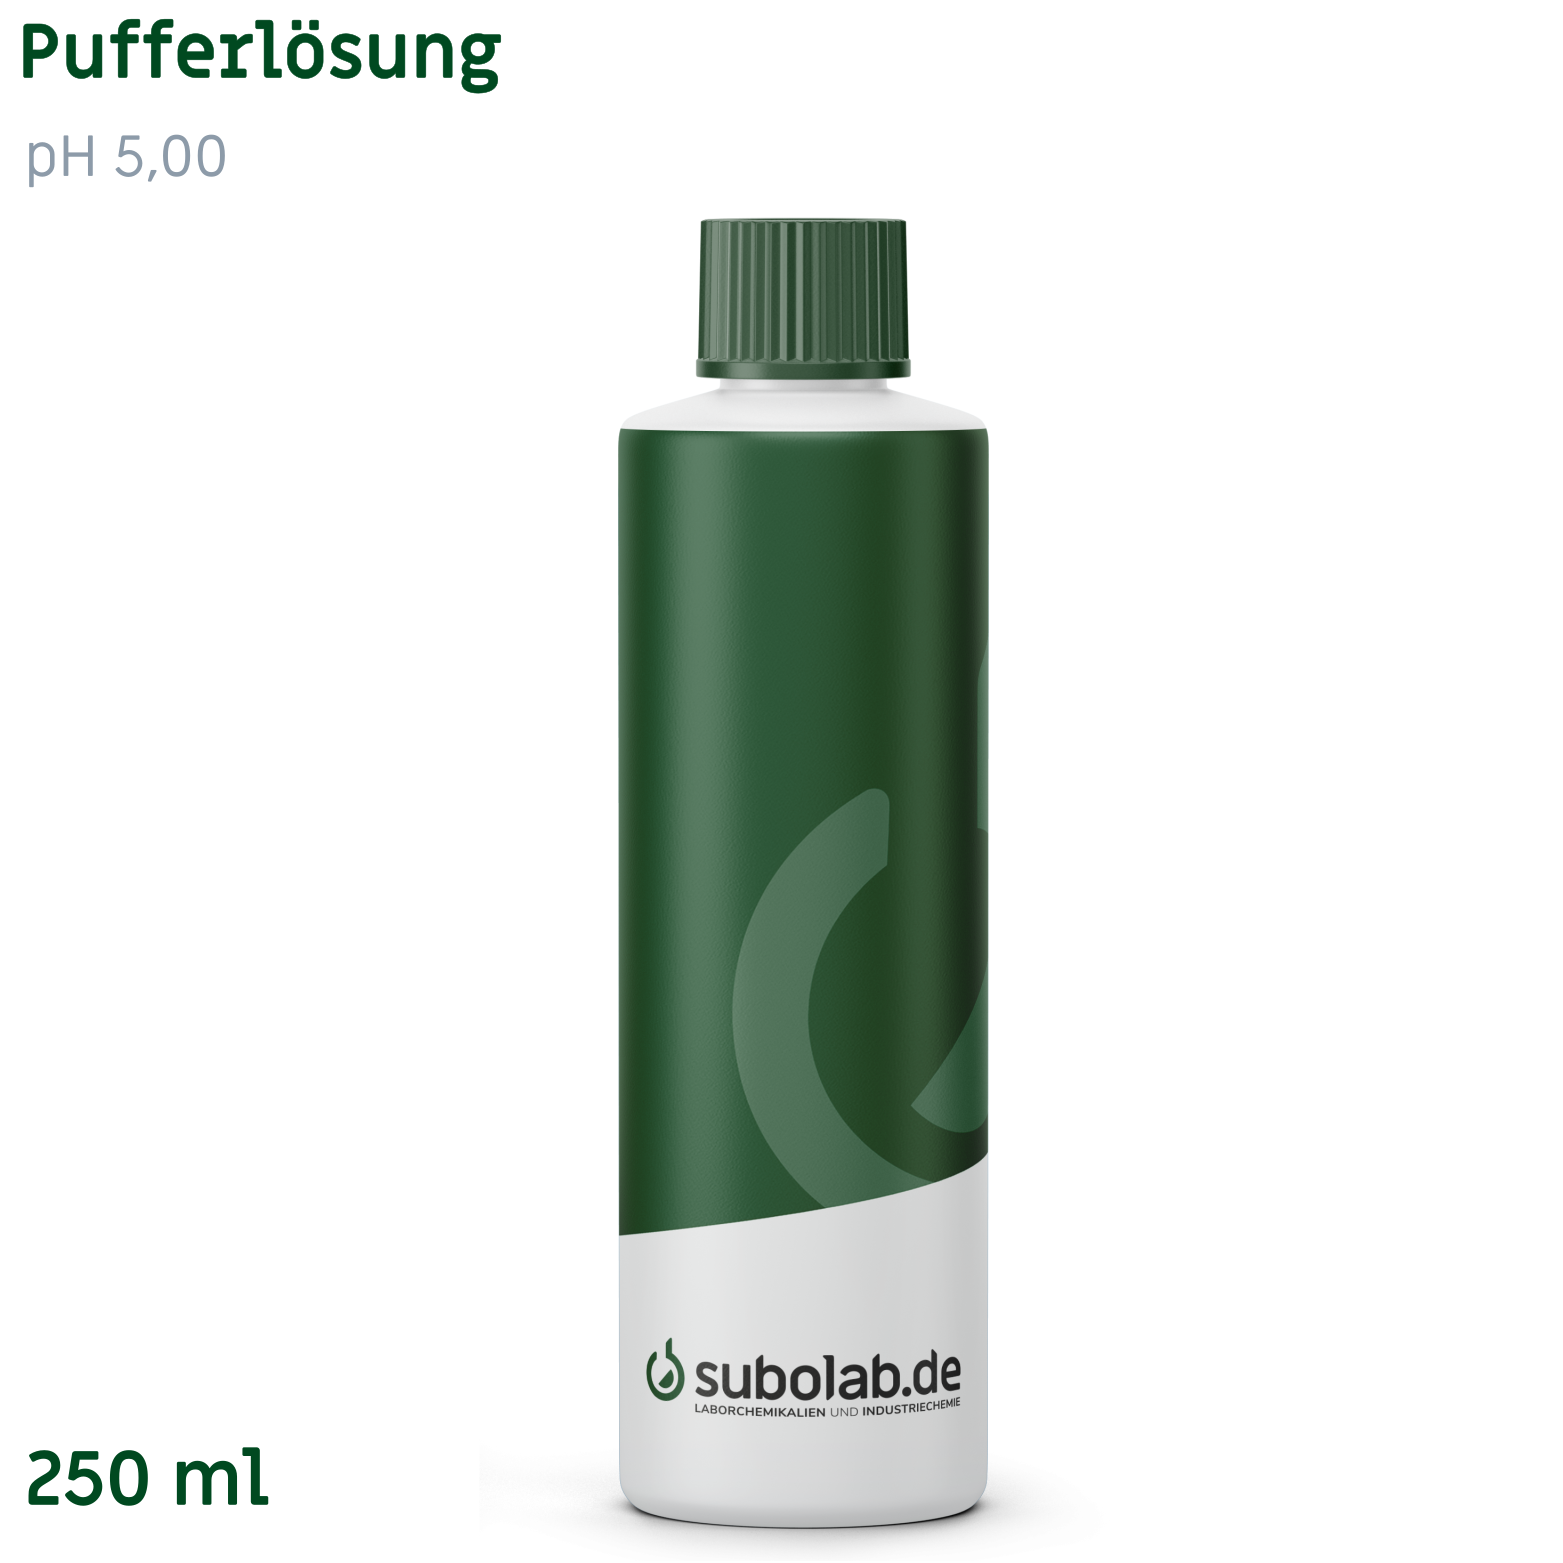 Bild von Pufferlösung pH 5,00 (100 g/L Natronlauge, 240 g/L Essigsäure) (250 ml)